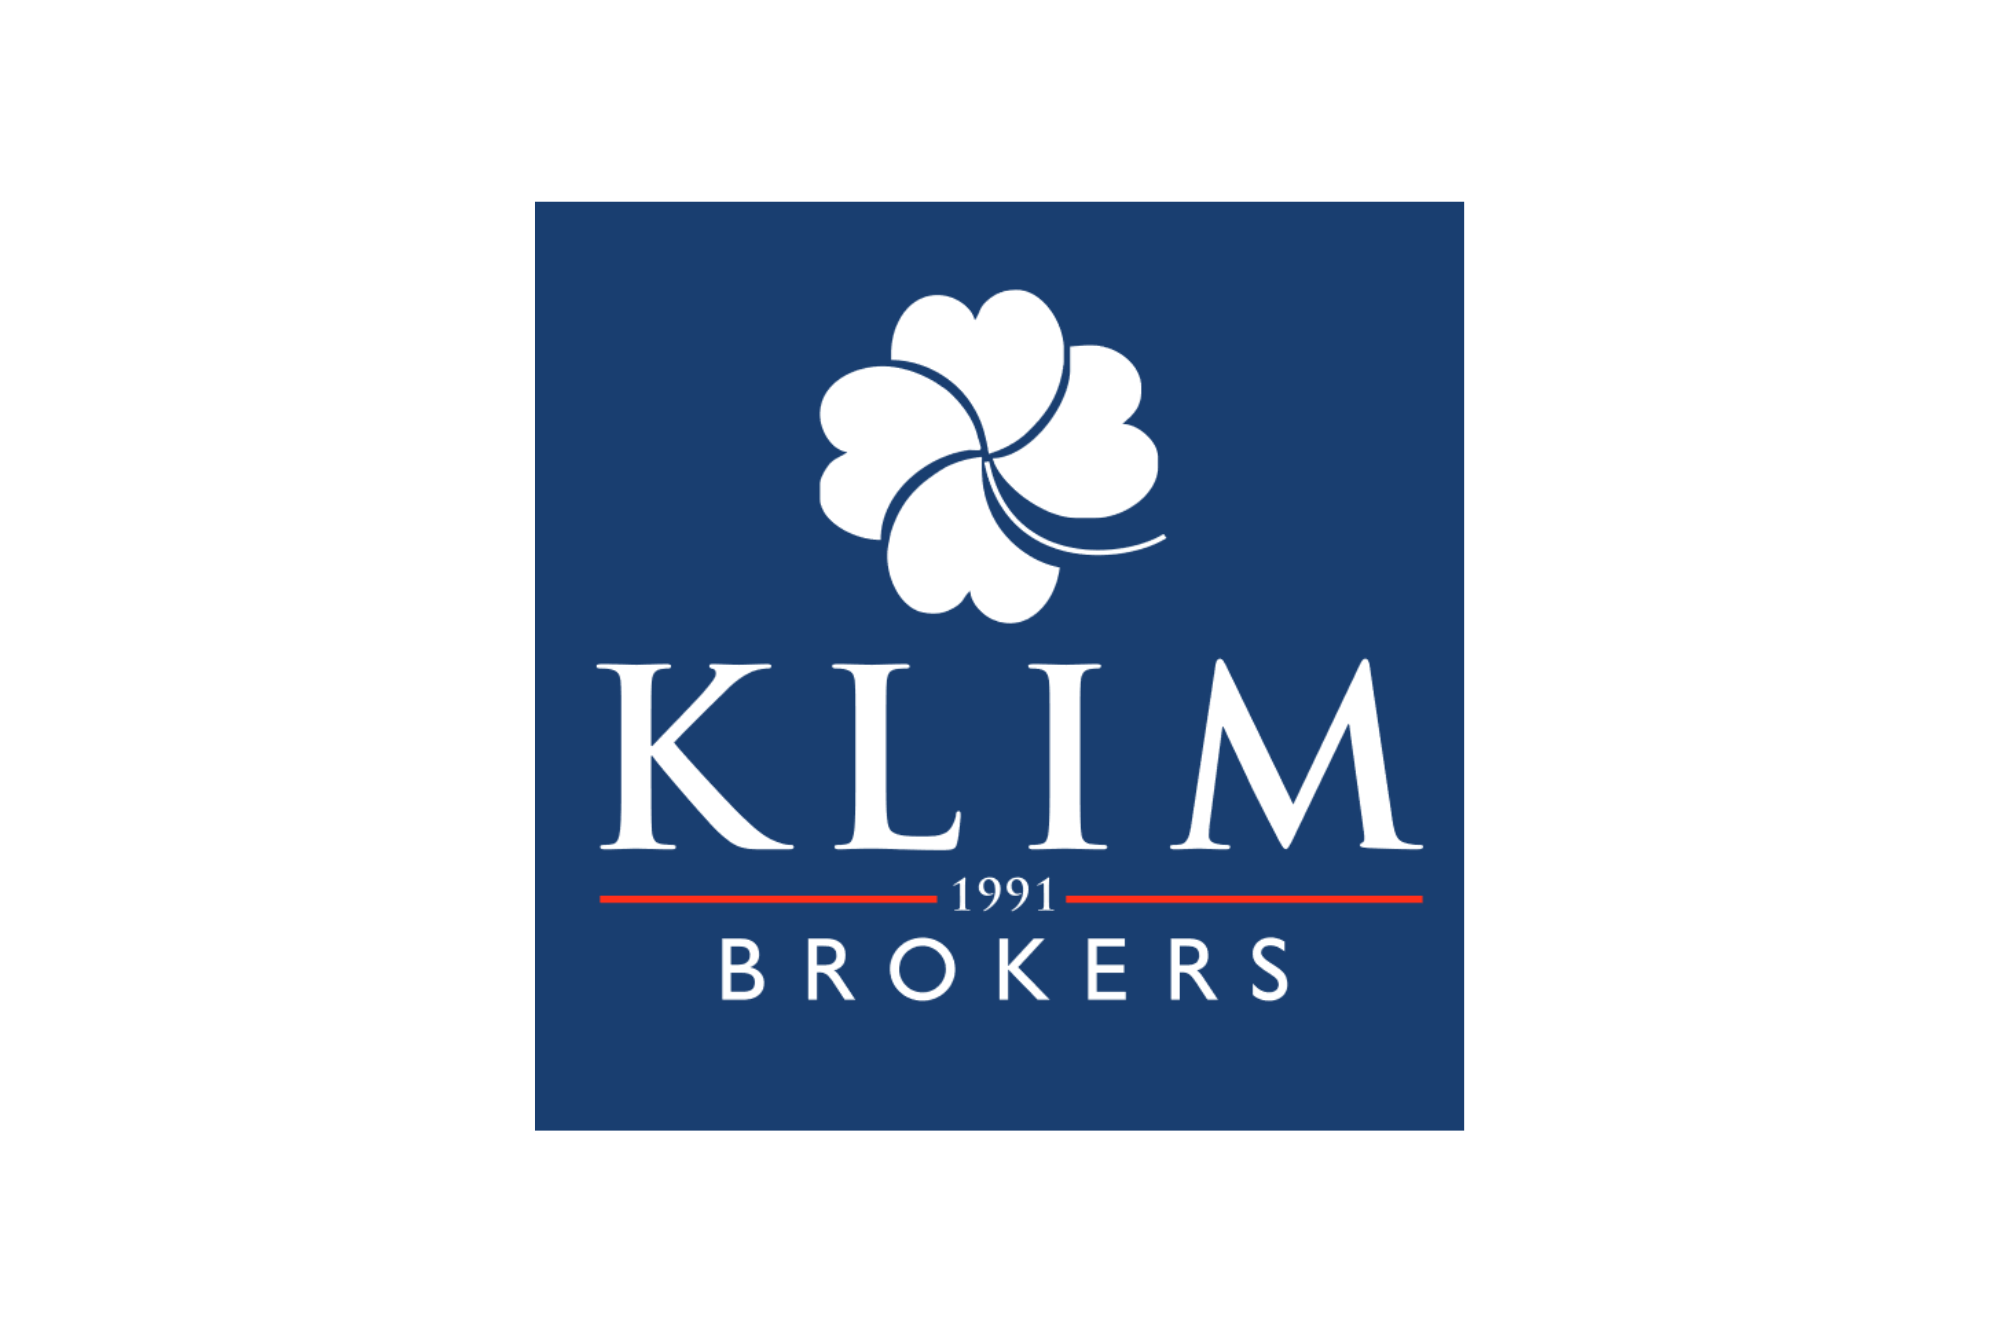 KLIM Brokers